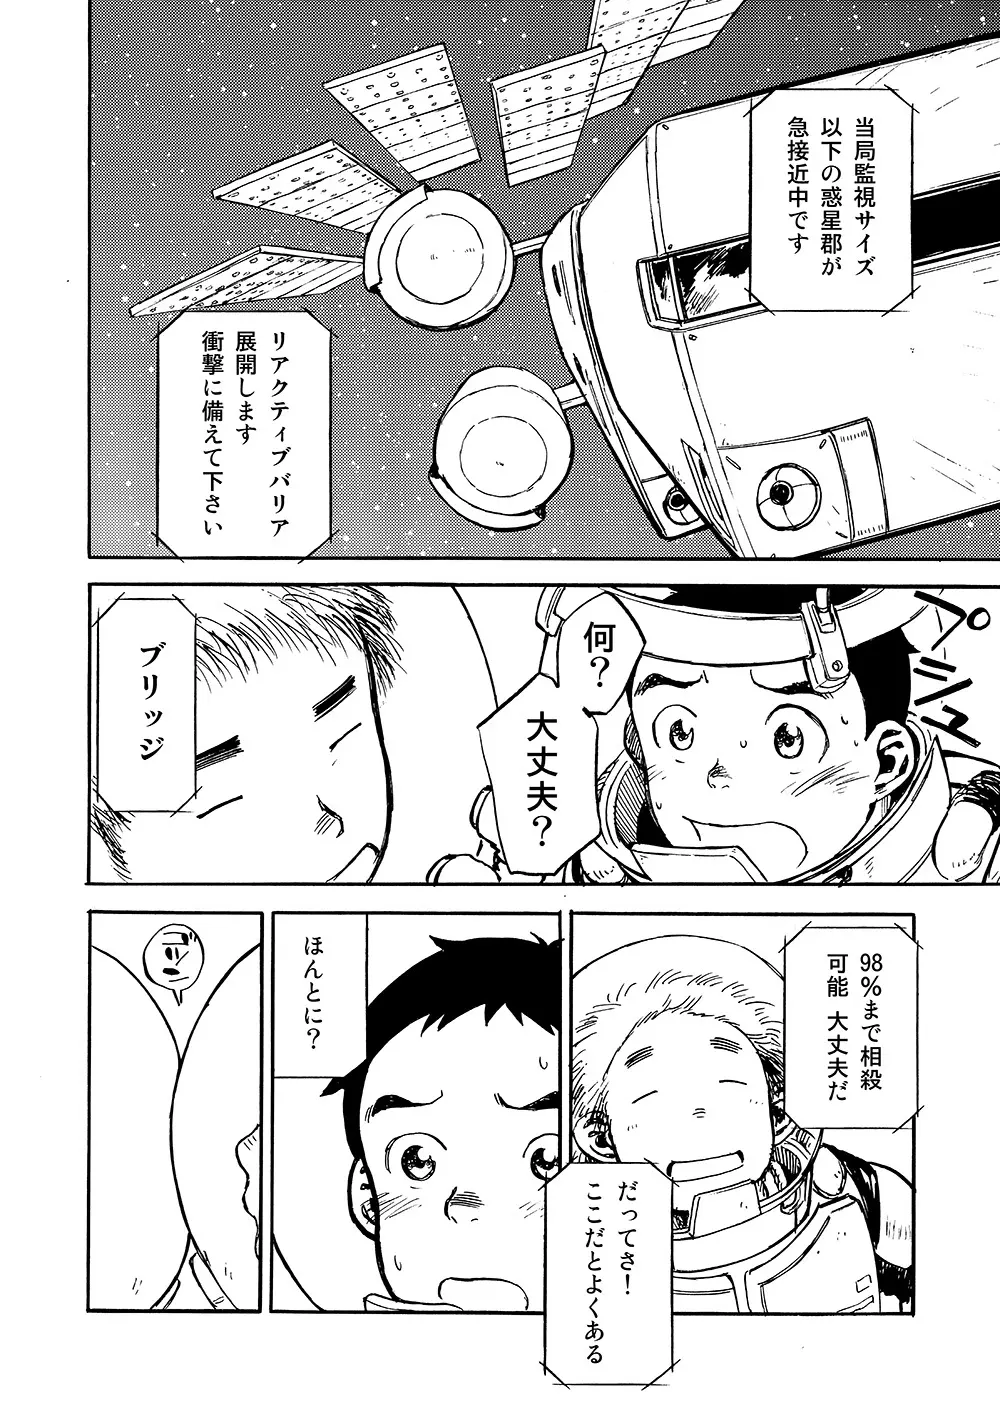 漫画少年ズーム vol.02 28ページ